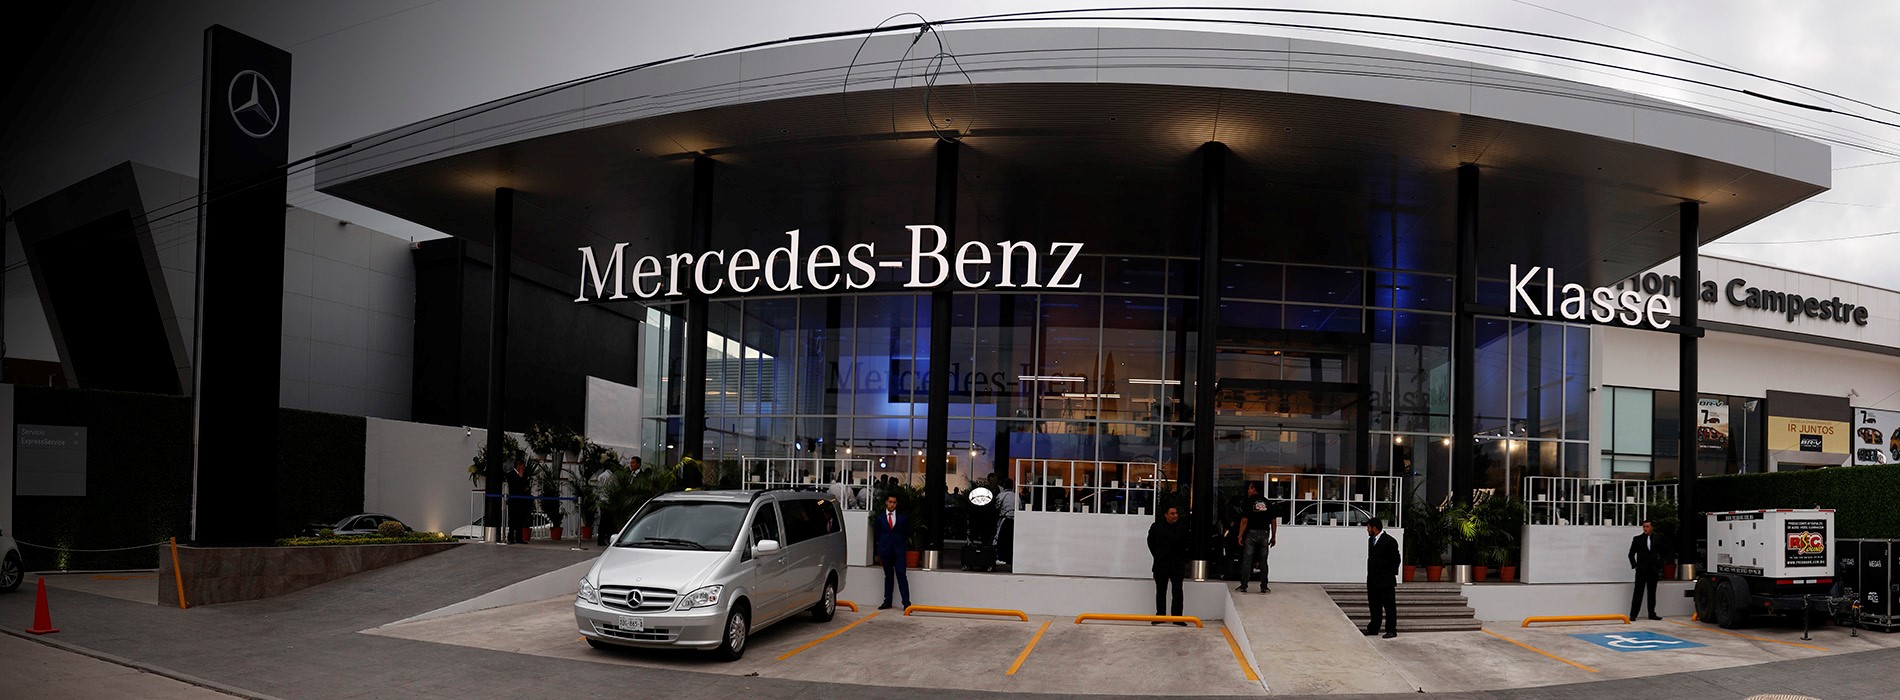 Mercedes-Benz Klasse